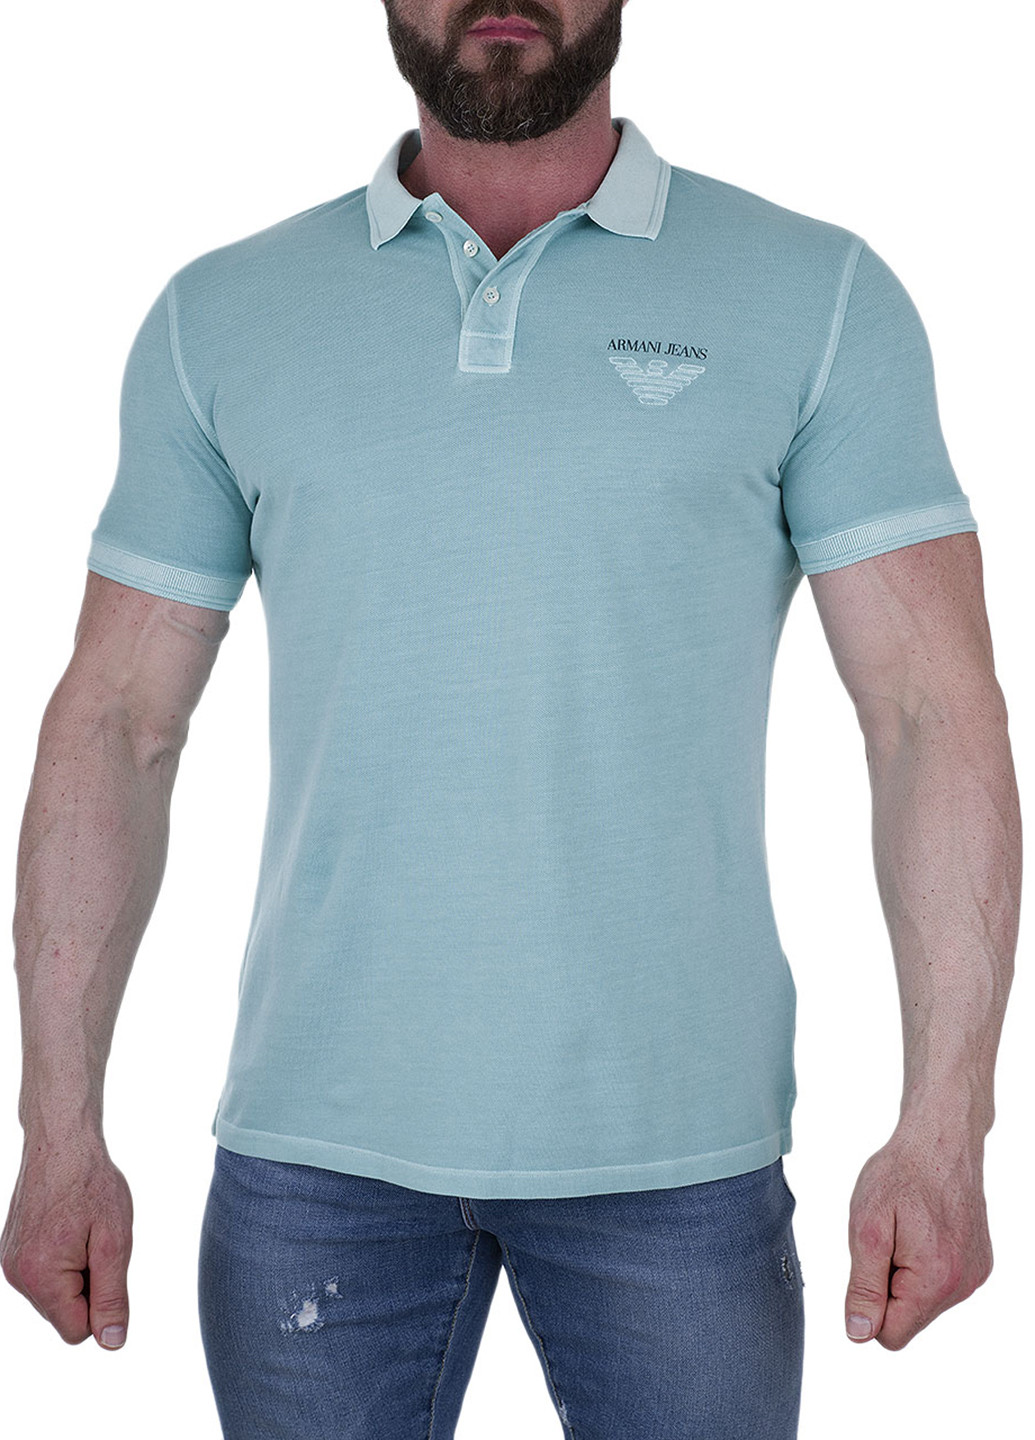 Голубой футболка-поло для мужчин Armani Jeans с логотипом